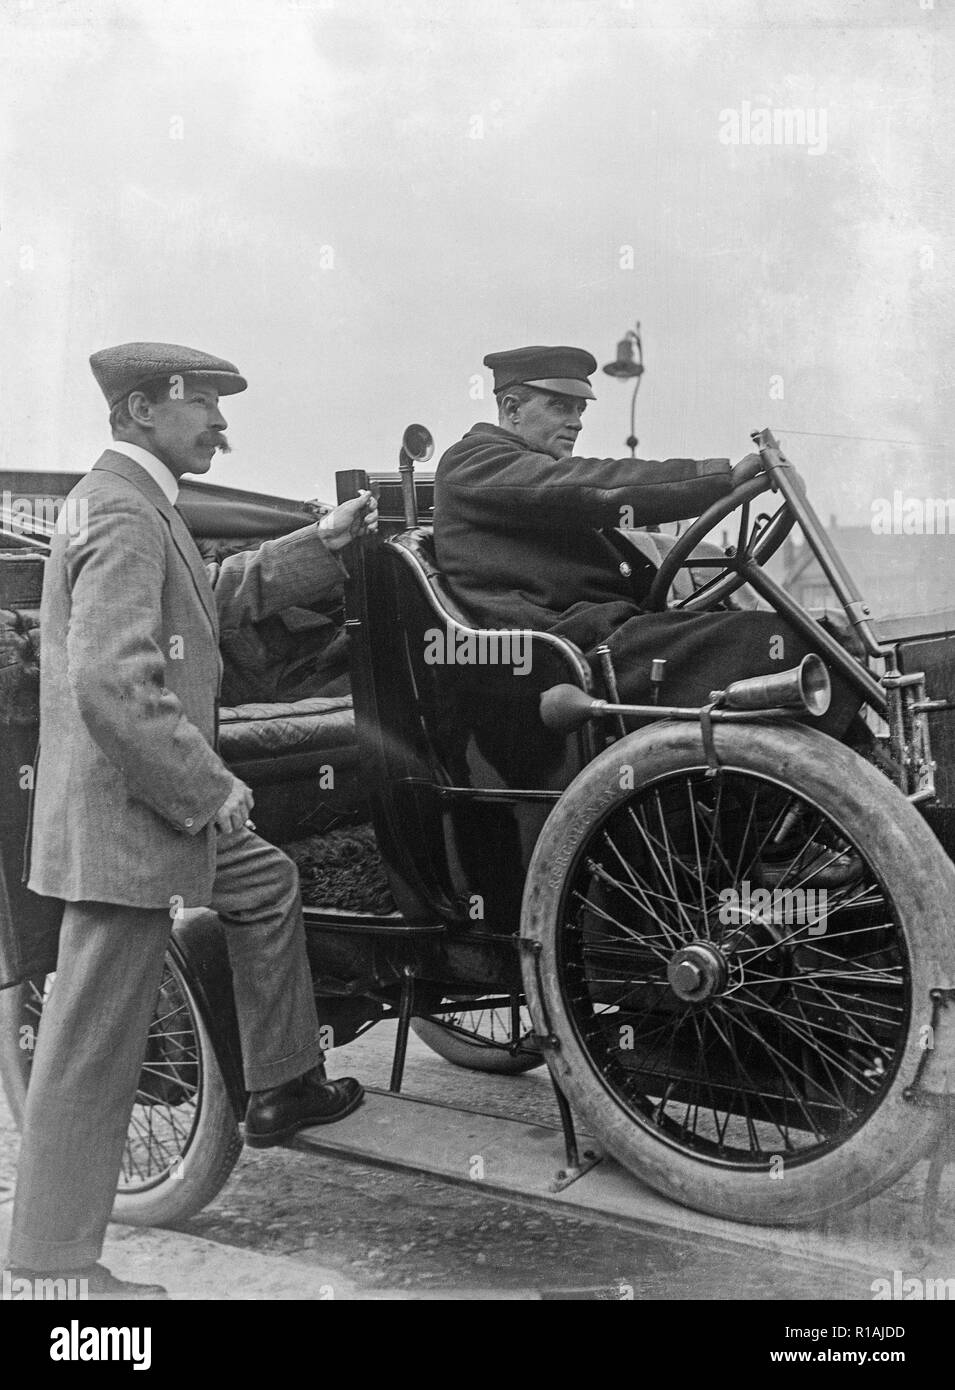 Une photographie en noir et blanc prises au cours de la début du xxe siècle montrant deux hommes et un vintage motor car. Un homme derrière le volant, et un homme debout avec un pied sur le marchepied de la voiture. Banque D'Images